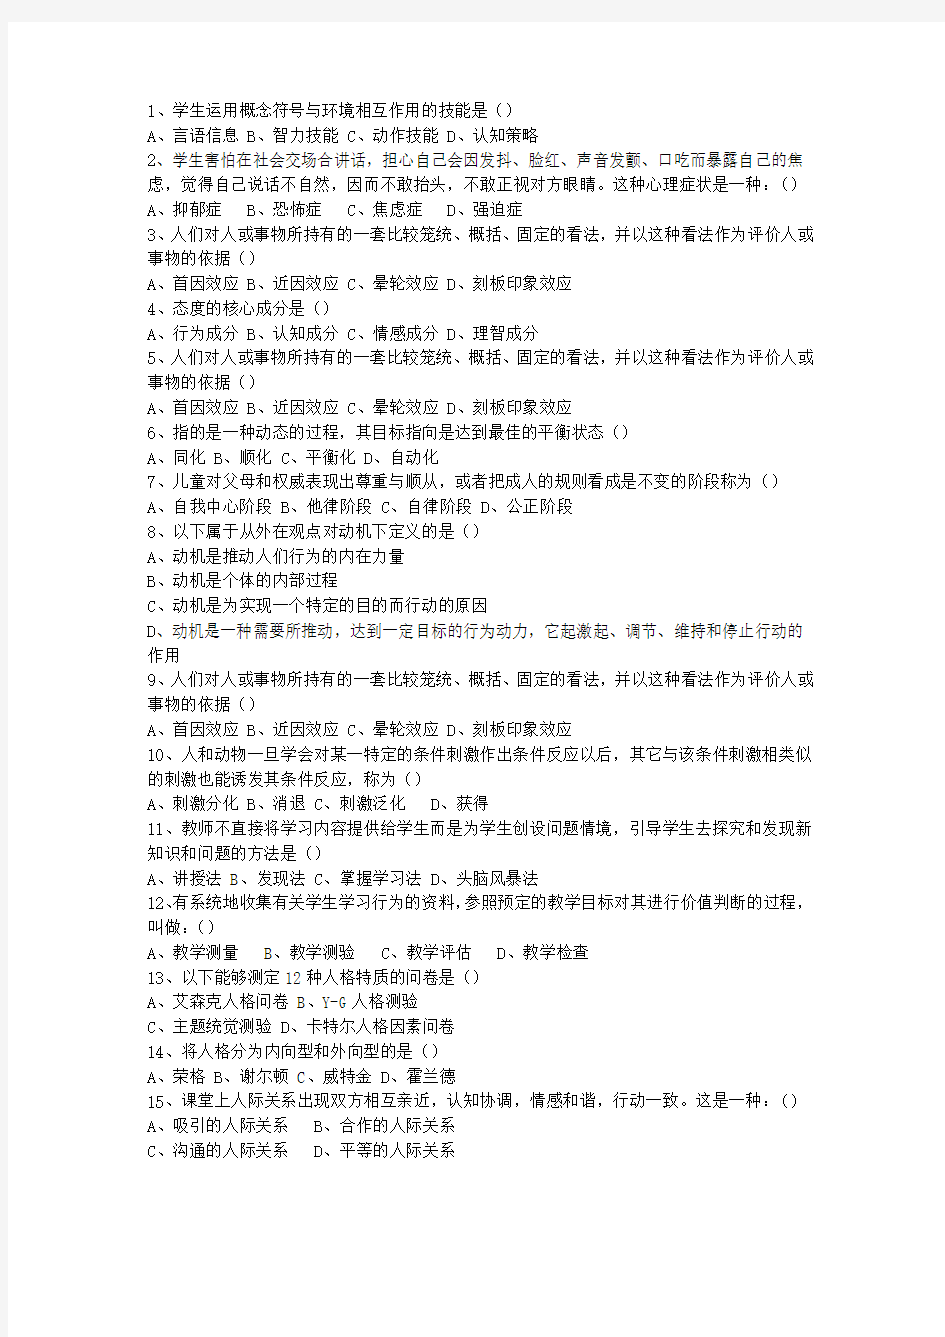 2013吉林省教师资格证考试(必备资料)